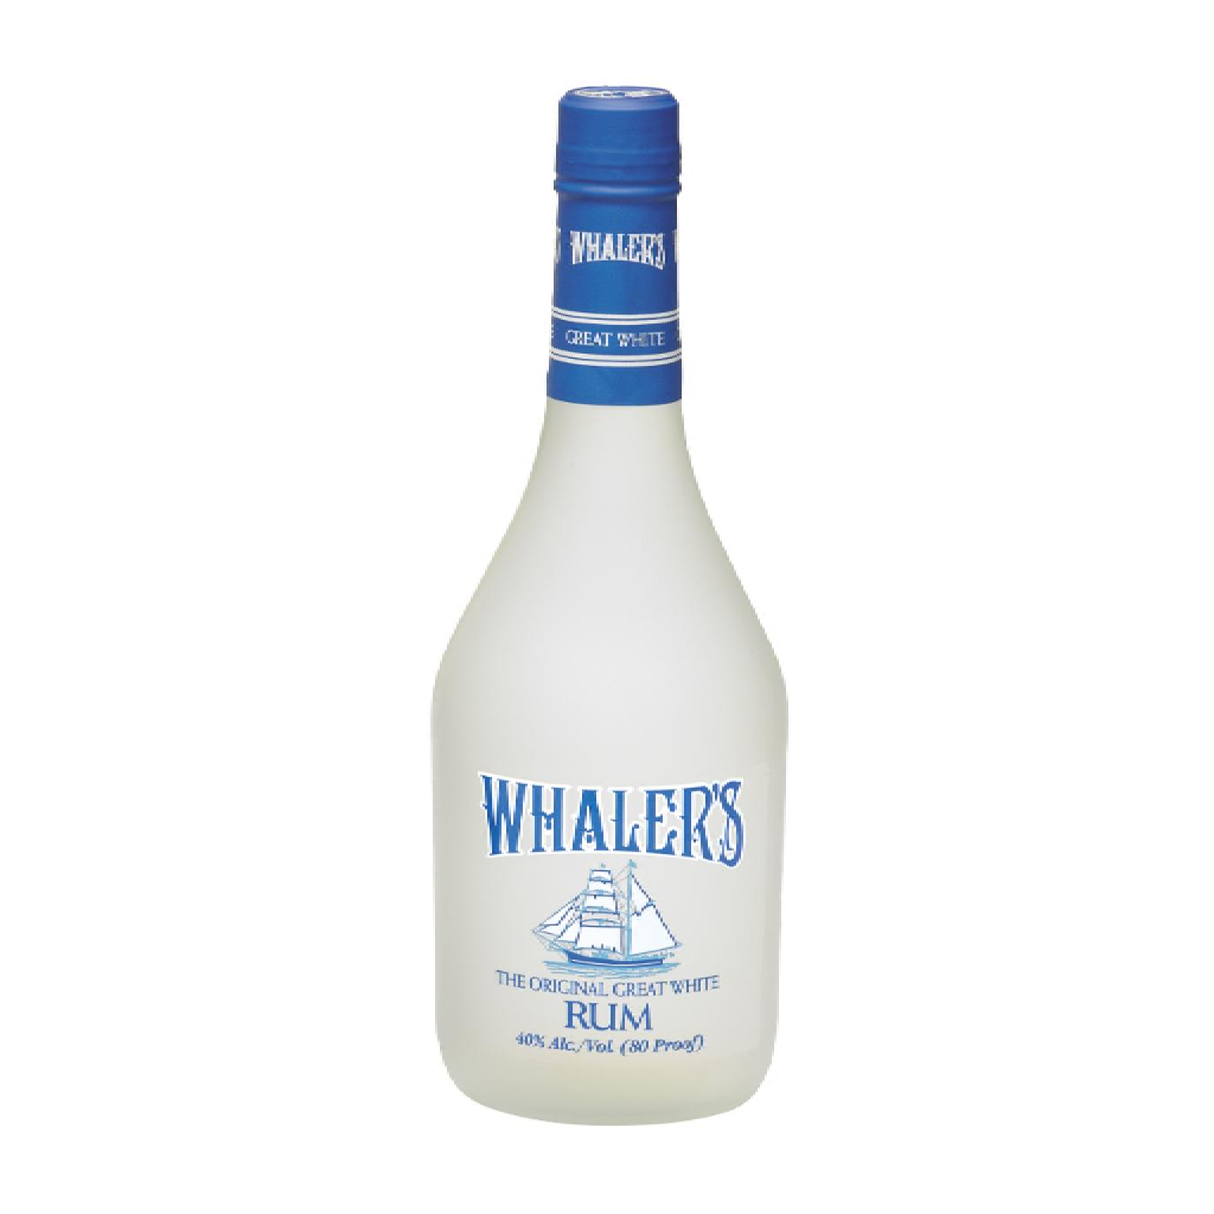 Whaler's Light Rum Great White - Liquor Geeks